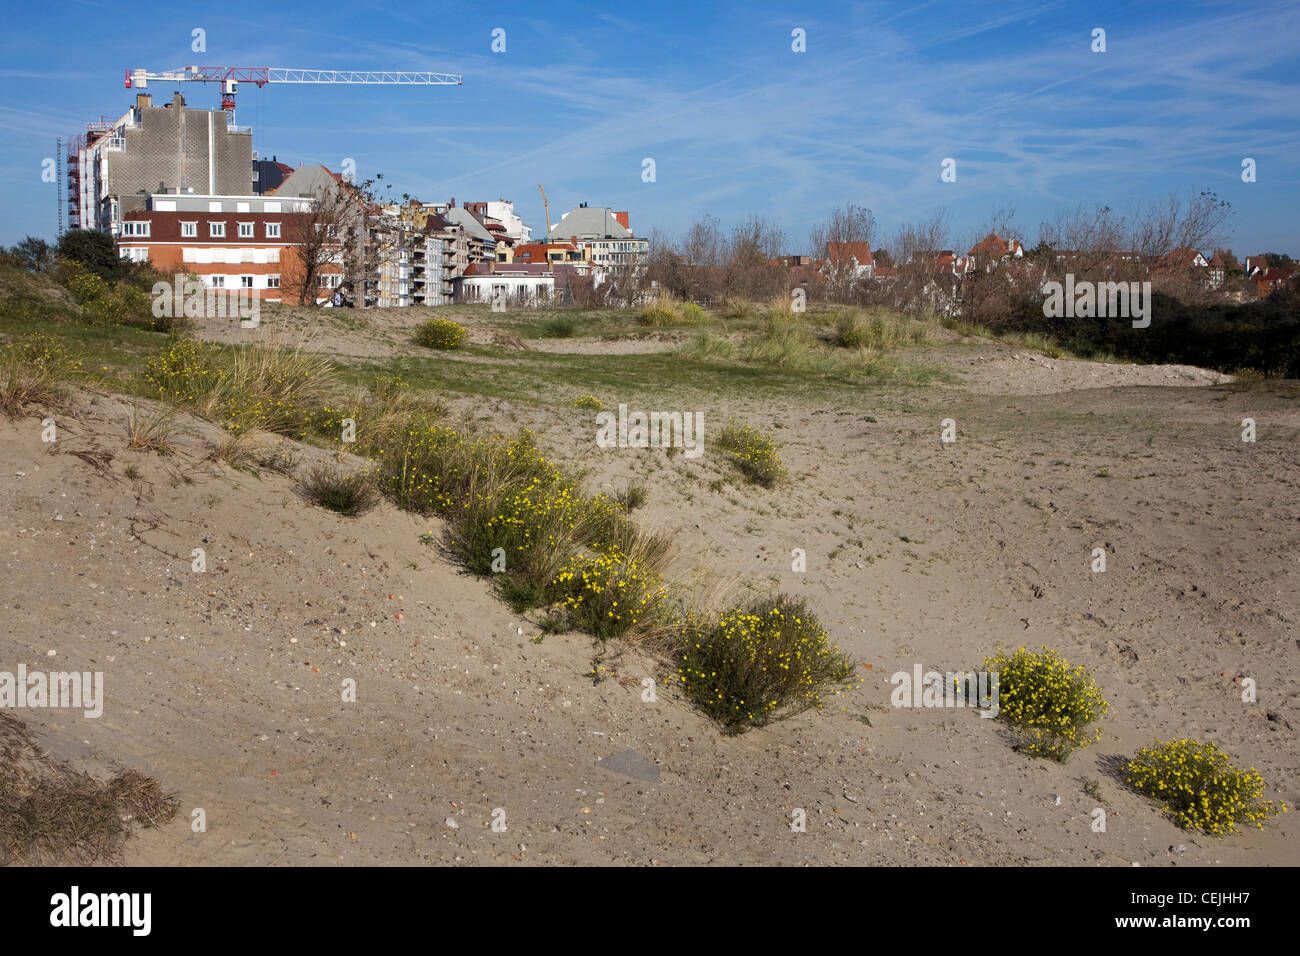 Dünen und fortschreitenden Urbanisierung durch den Bau von Ferienwohnungen an der belgischen Nordseeküste, Knokke, Belgien Stockfoto